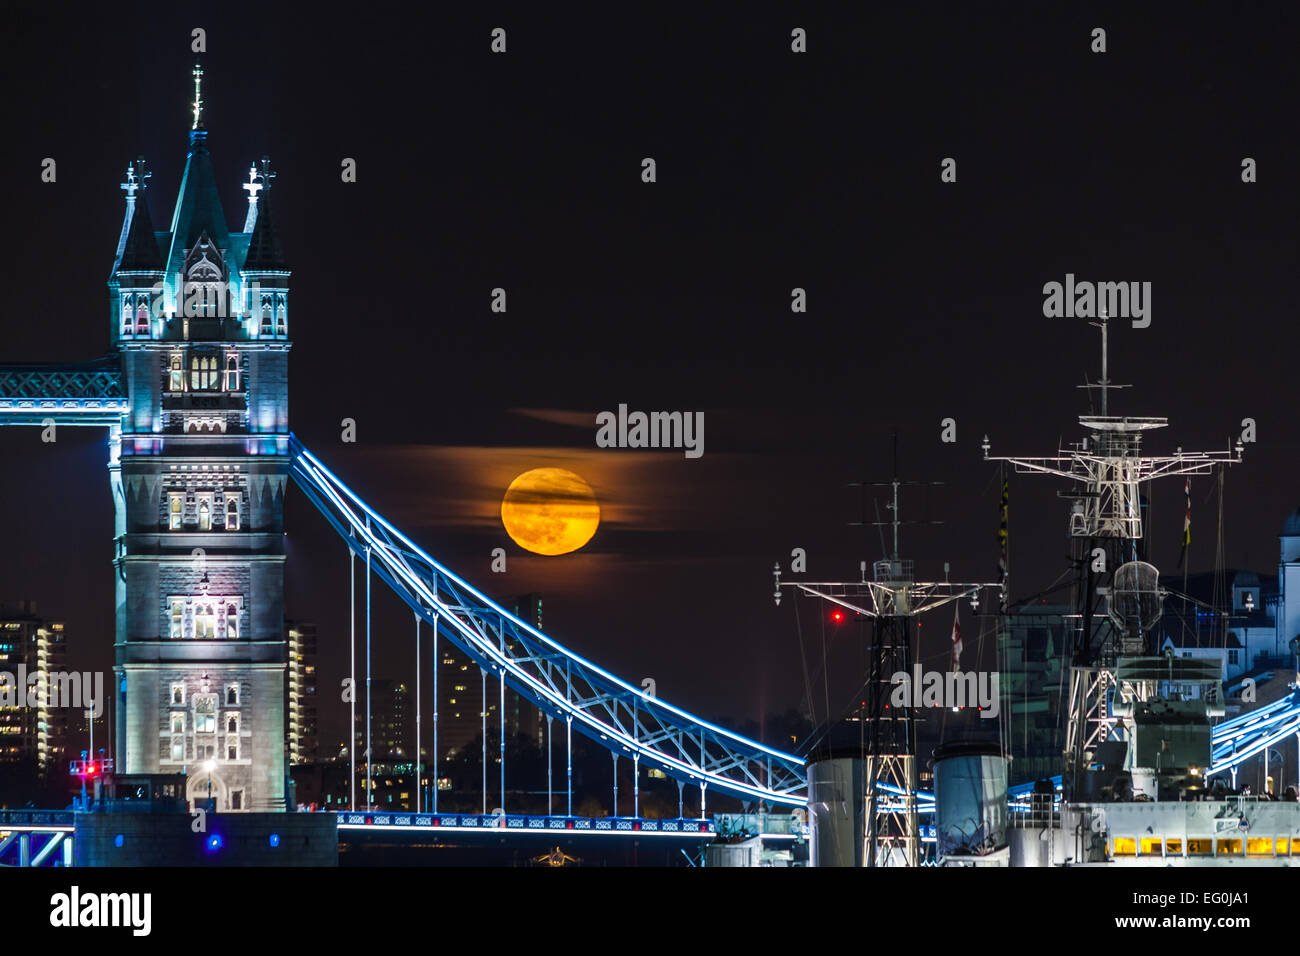 UK, Londra, illuminato il Tower Bridge, nave sul fiume e piena luna gialla nel cielo nero Foto Stock